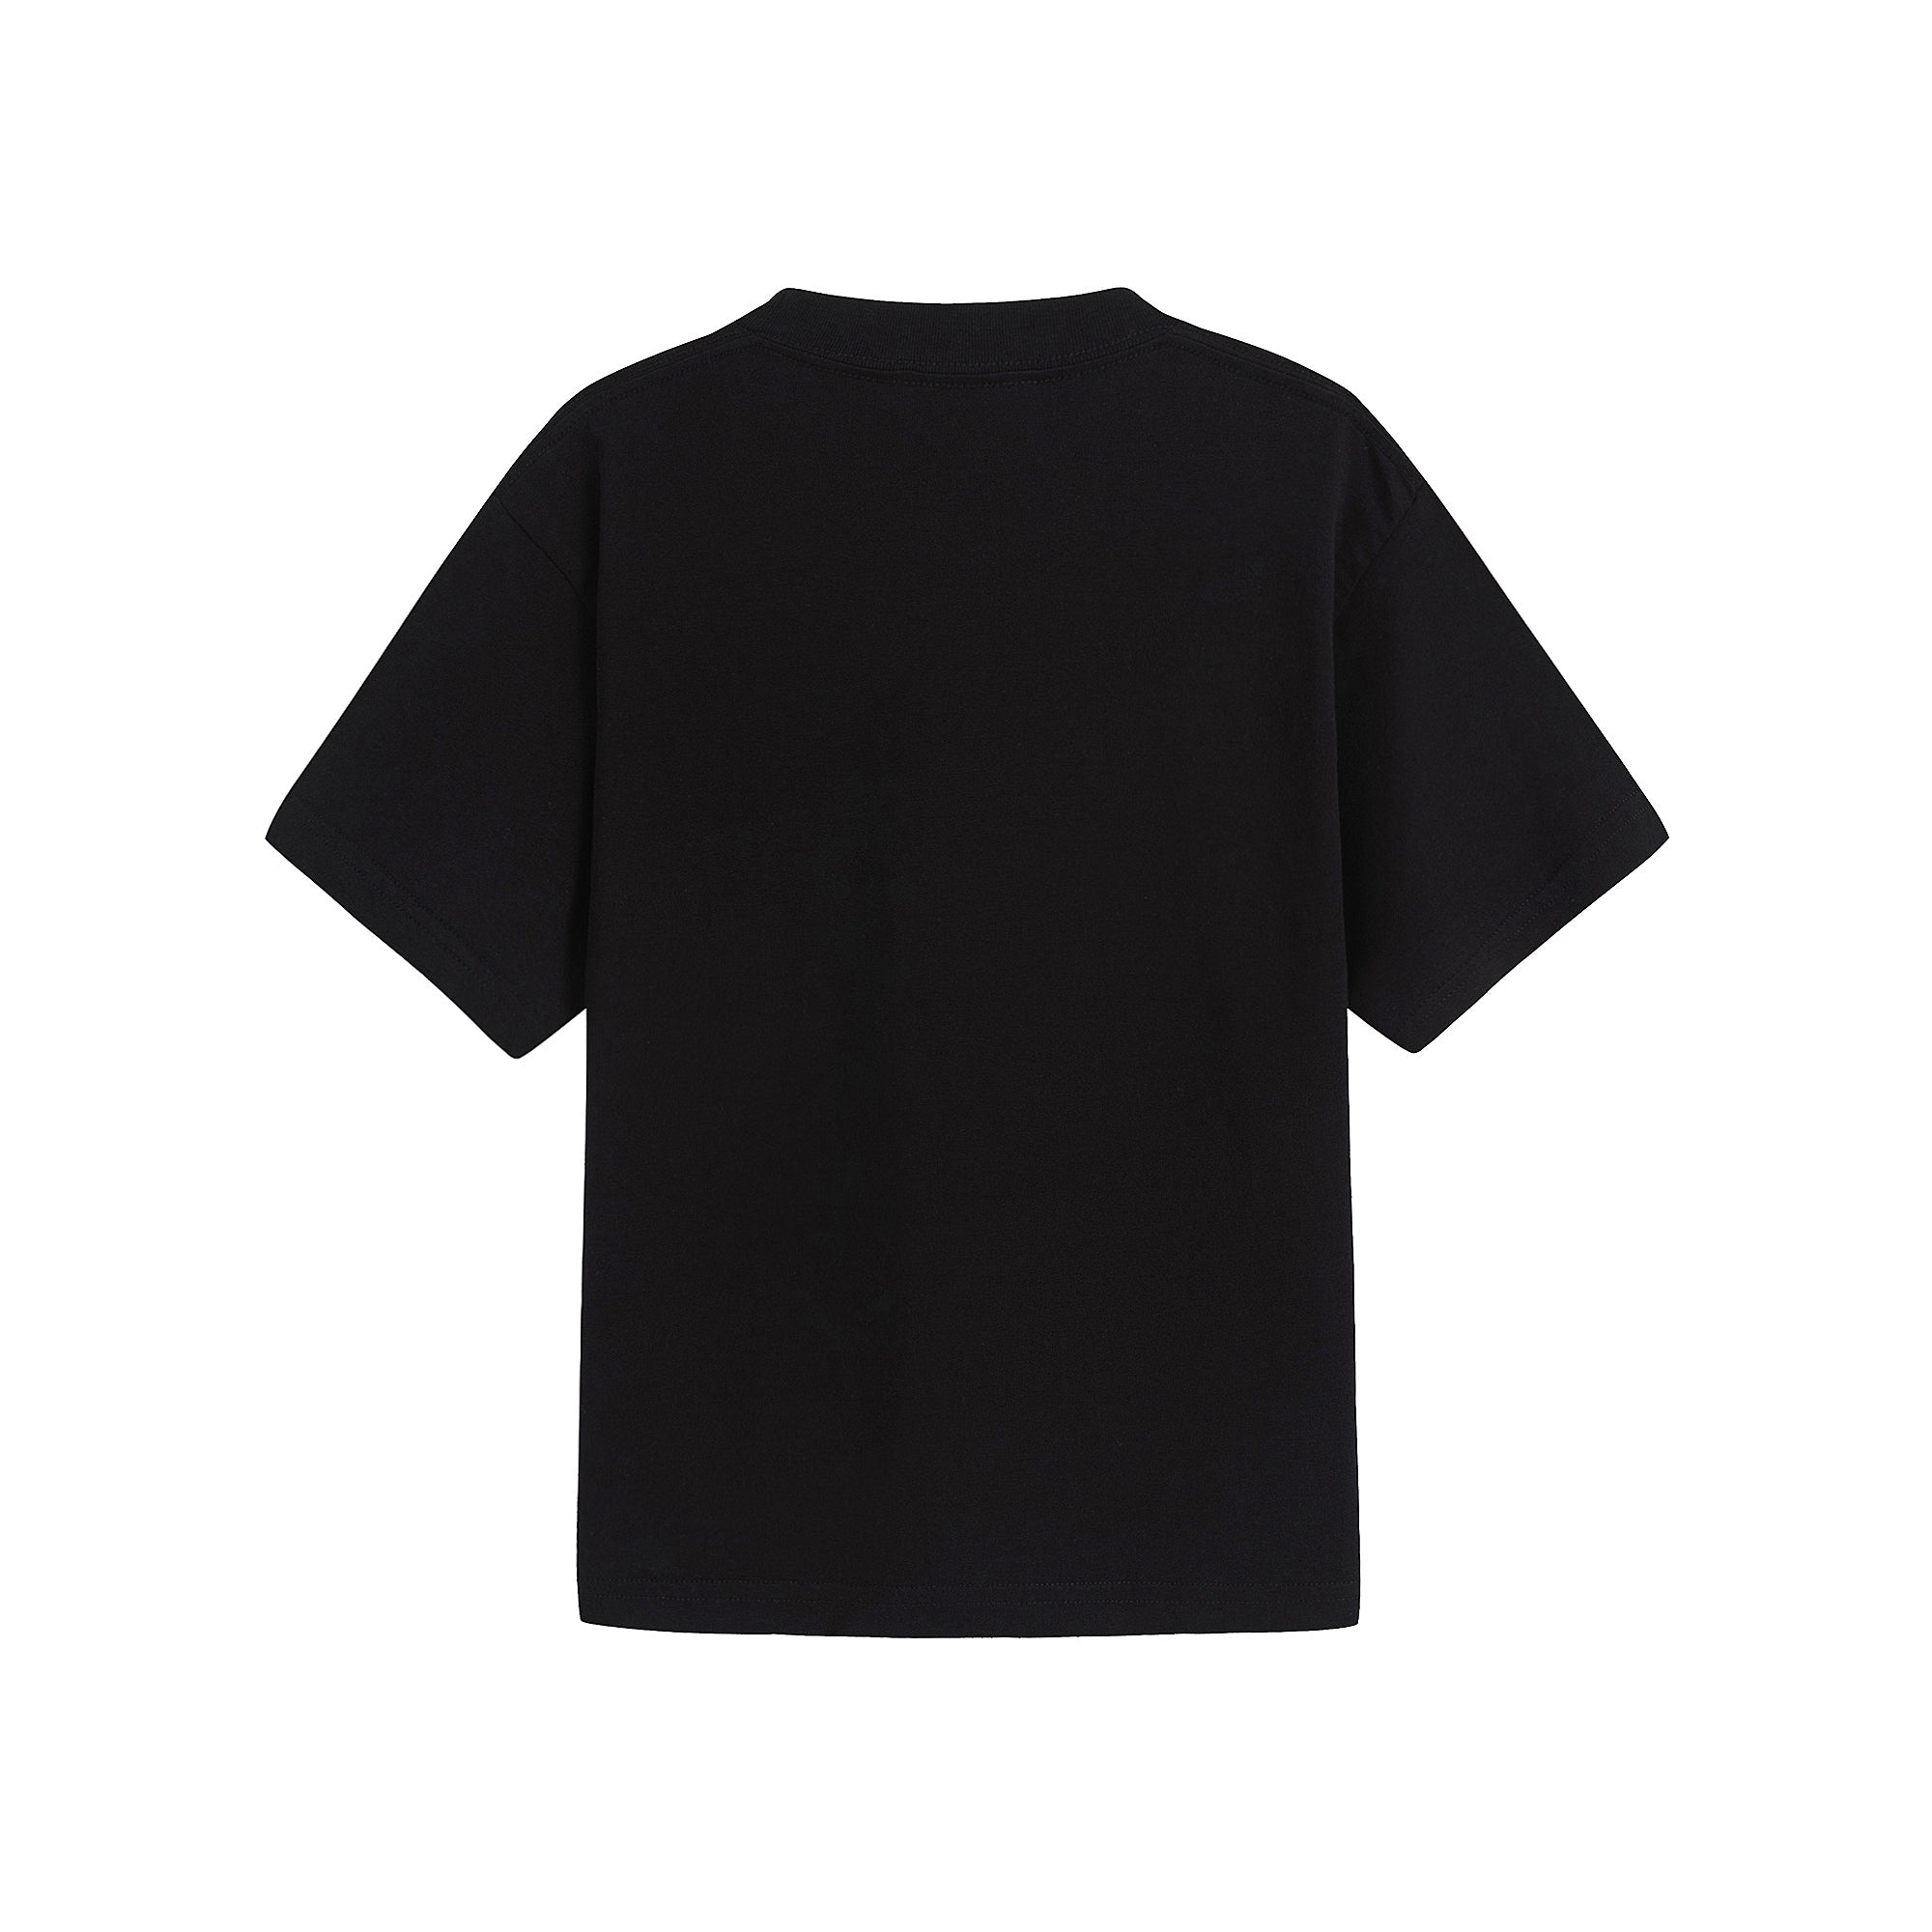 Boys & Girls Black Cotton T-Shirt